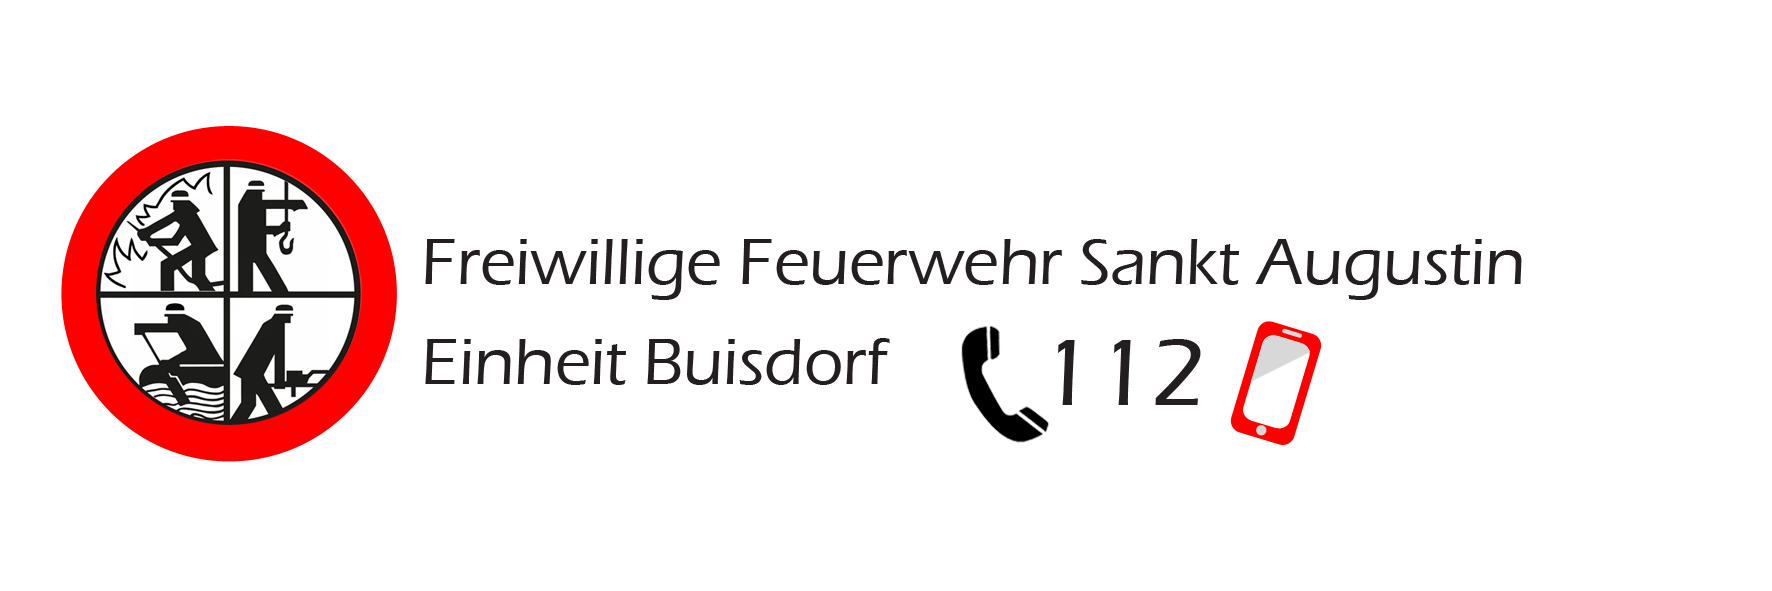 Feuerwehr Sankt Augustin – Einheit Buisdorf